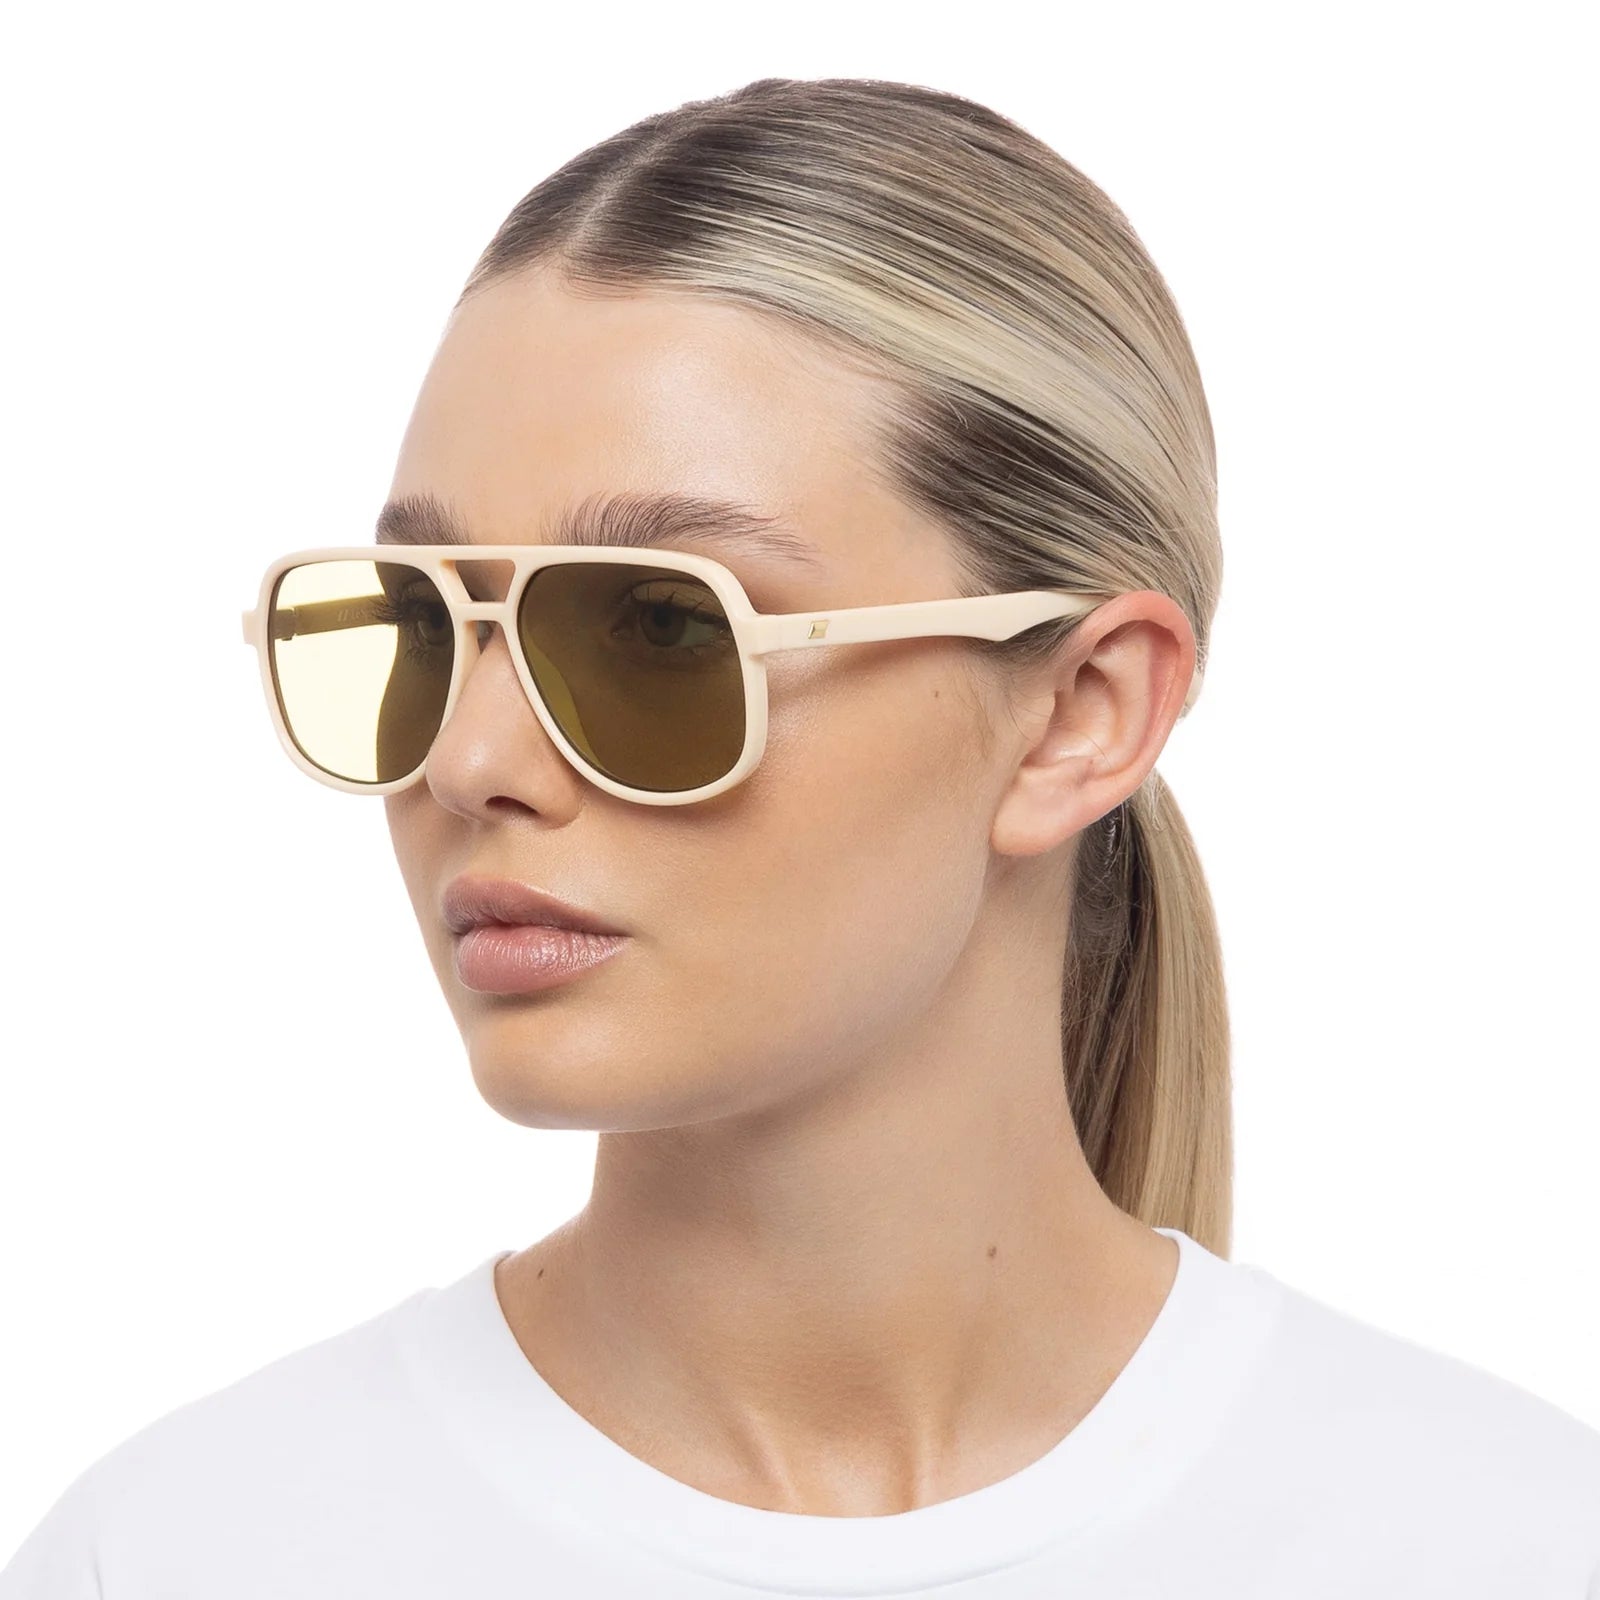 Le Specs Trailbreaker Sunglasses